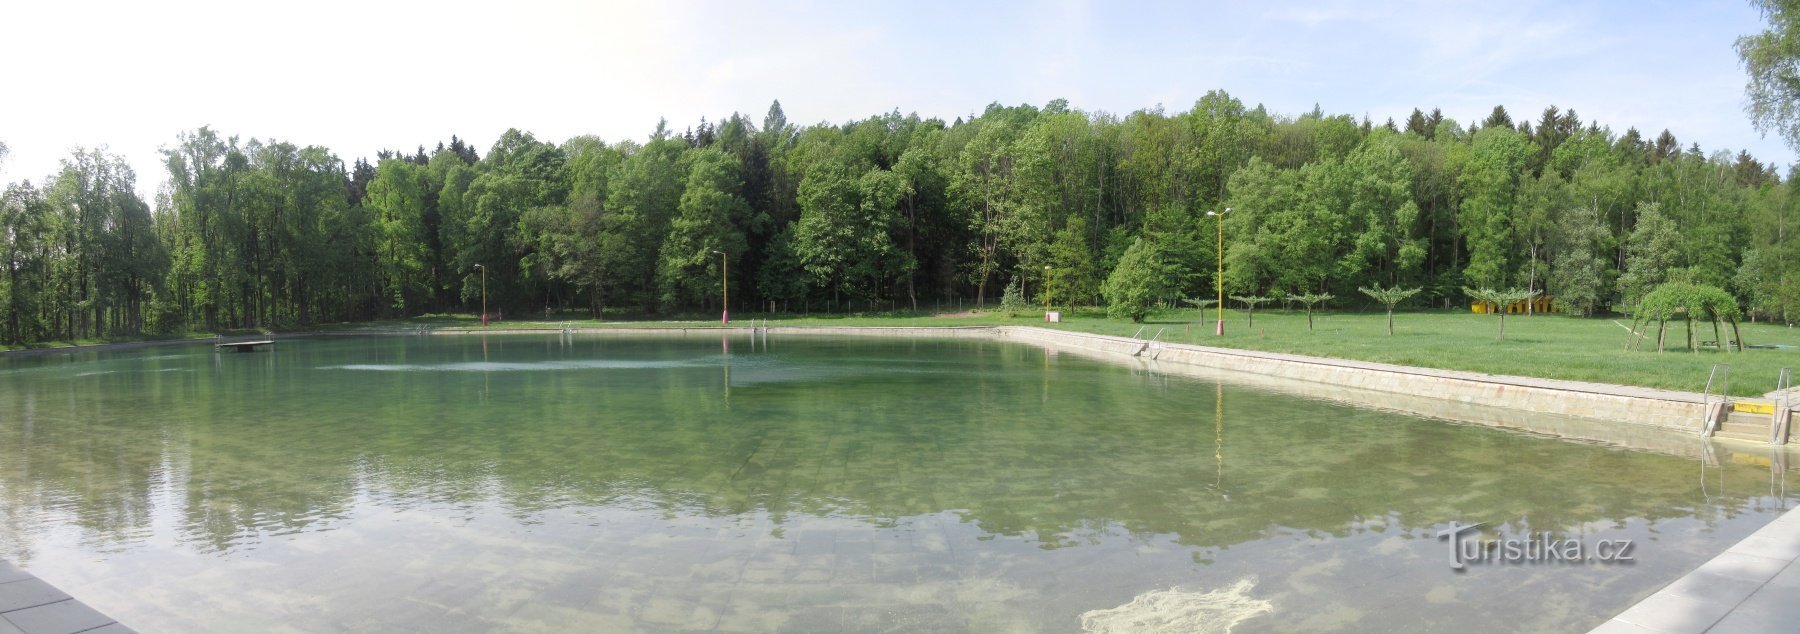 Osada Dachovy - Dachova swimmingpool, oprindeligt Dachova Sun Bath